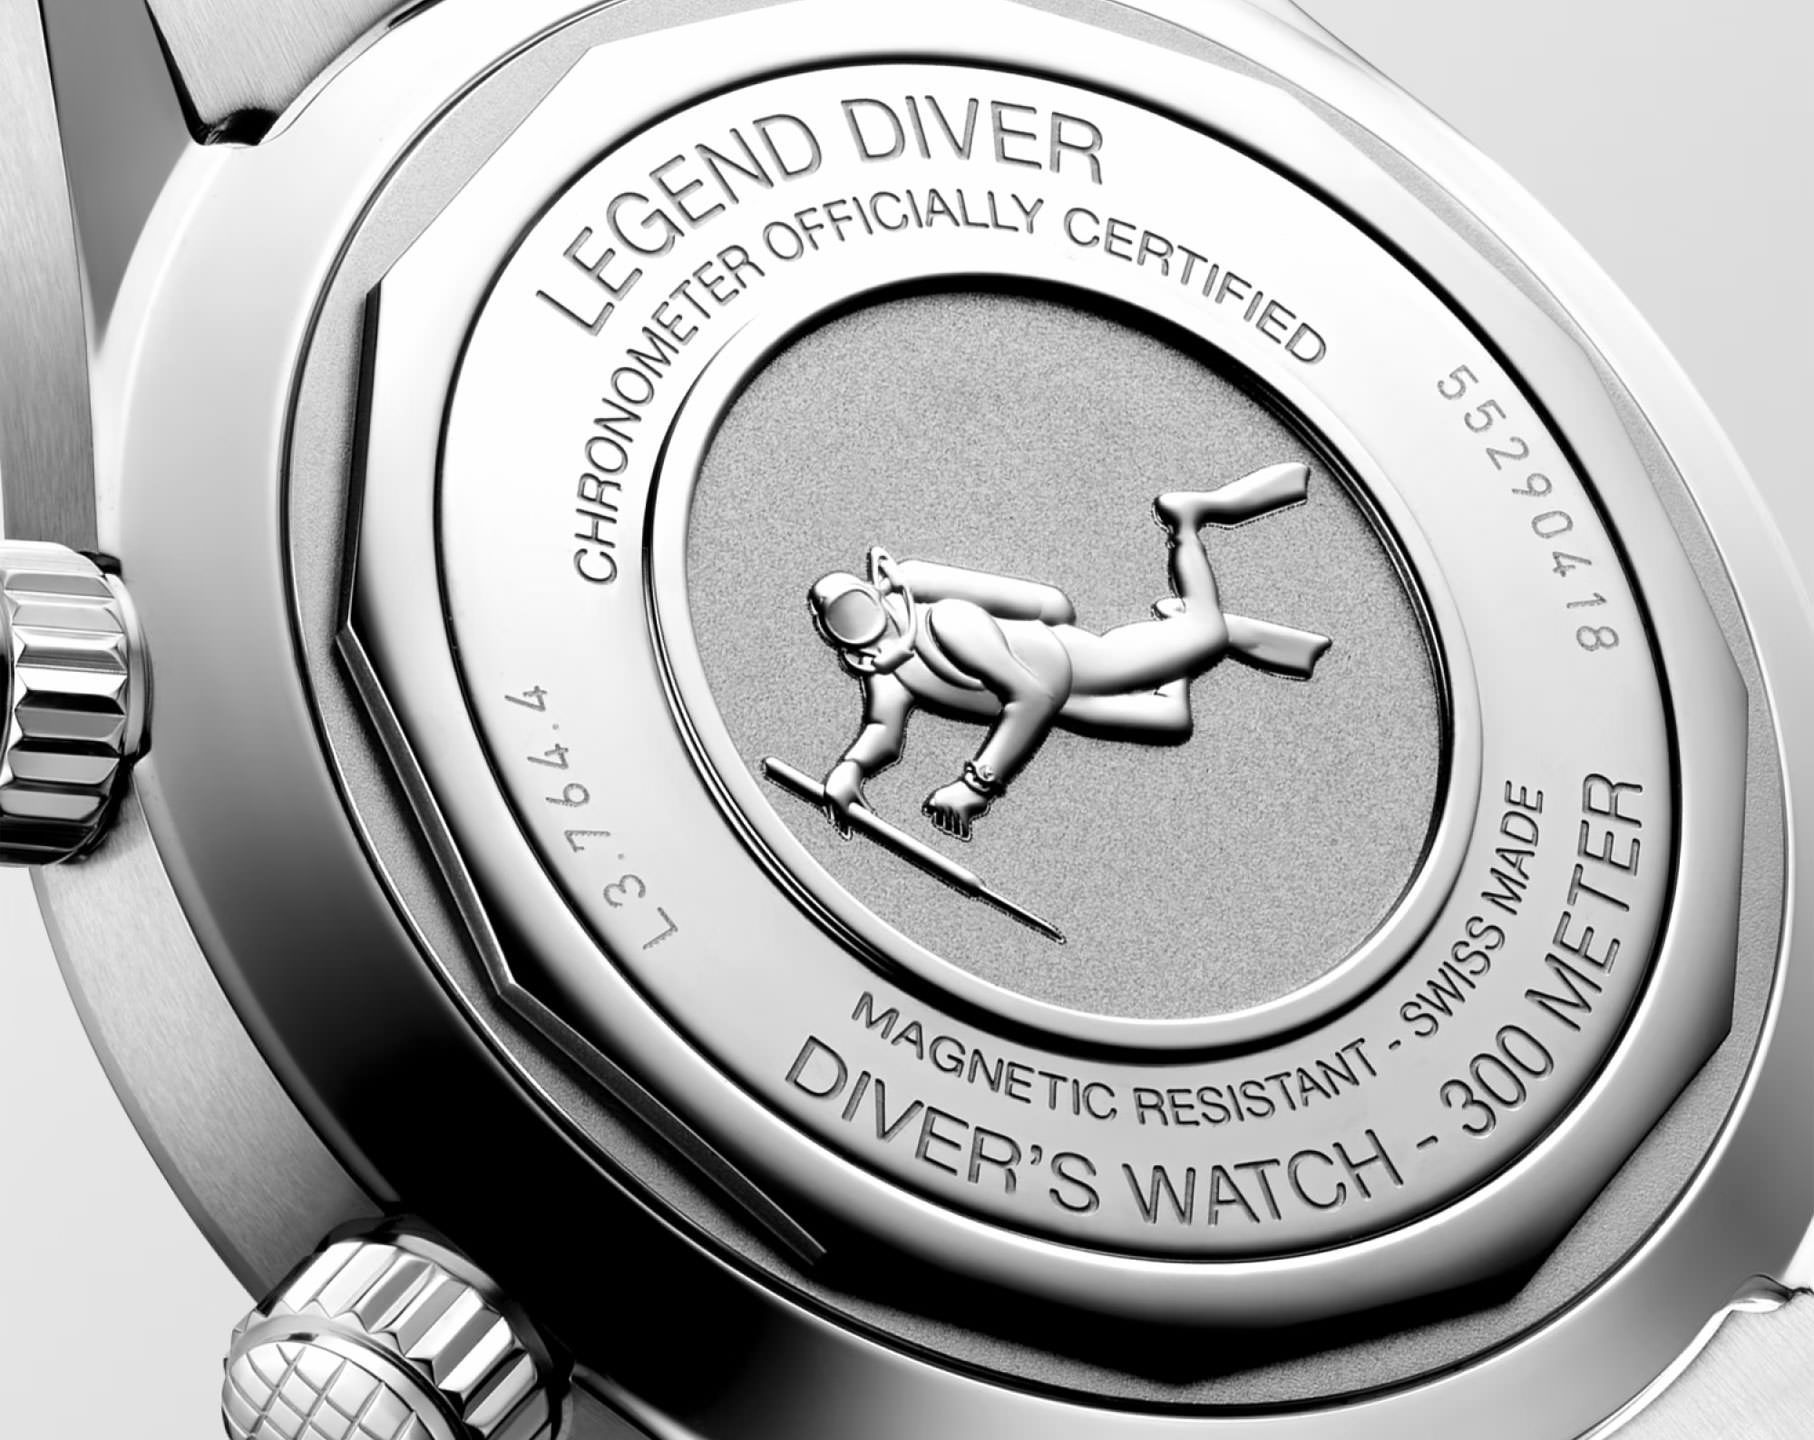 Longines Longines Legend Diver  Blue Dial 39 mm Automatic Watch For Men - 6